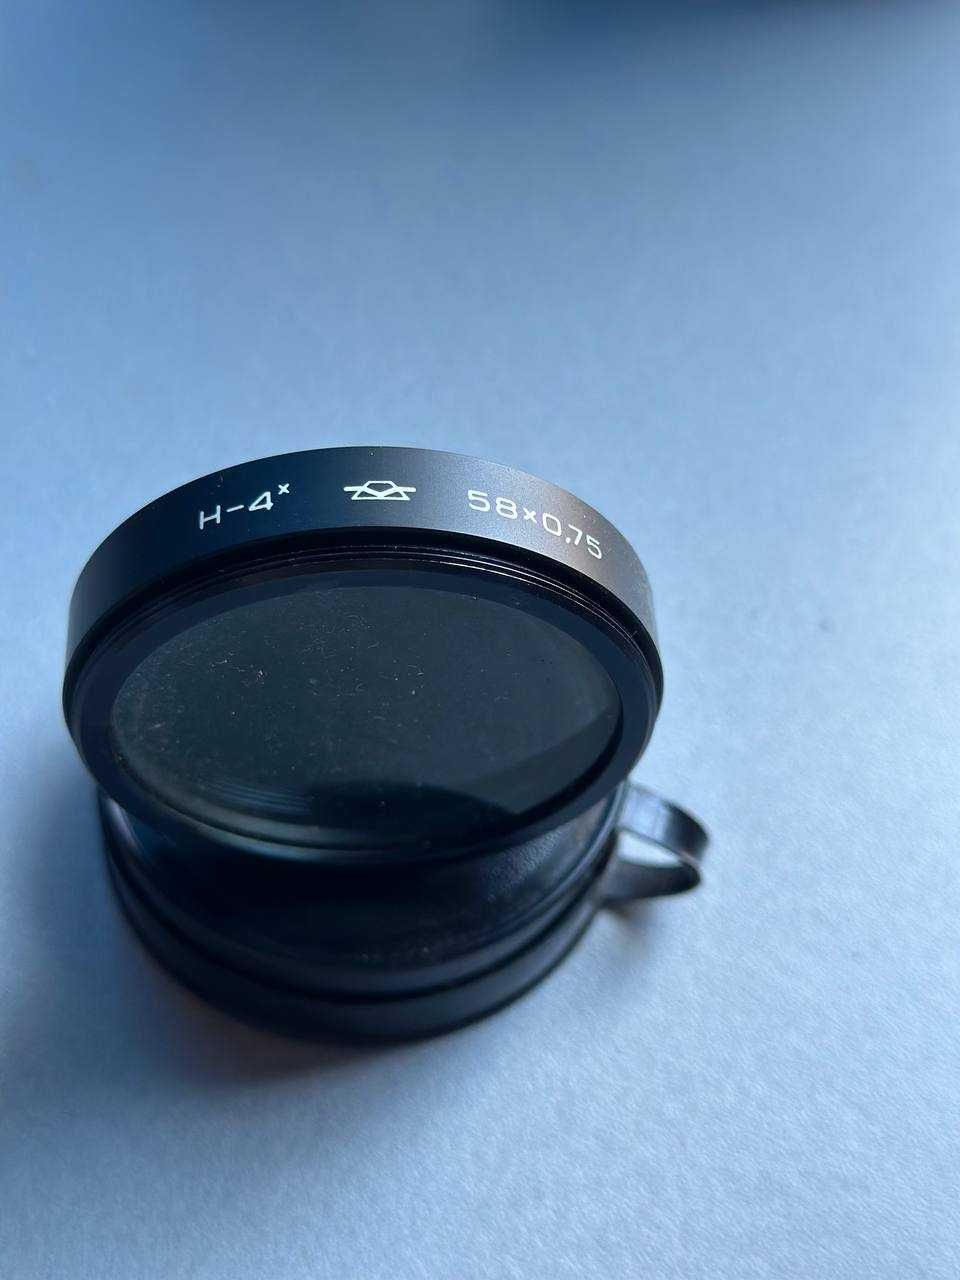 Cветофильтр фильтр h-2 h-4 58x0.75 кольцо на Объектив 58мм Canon Nikon